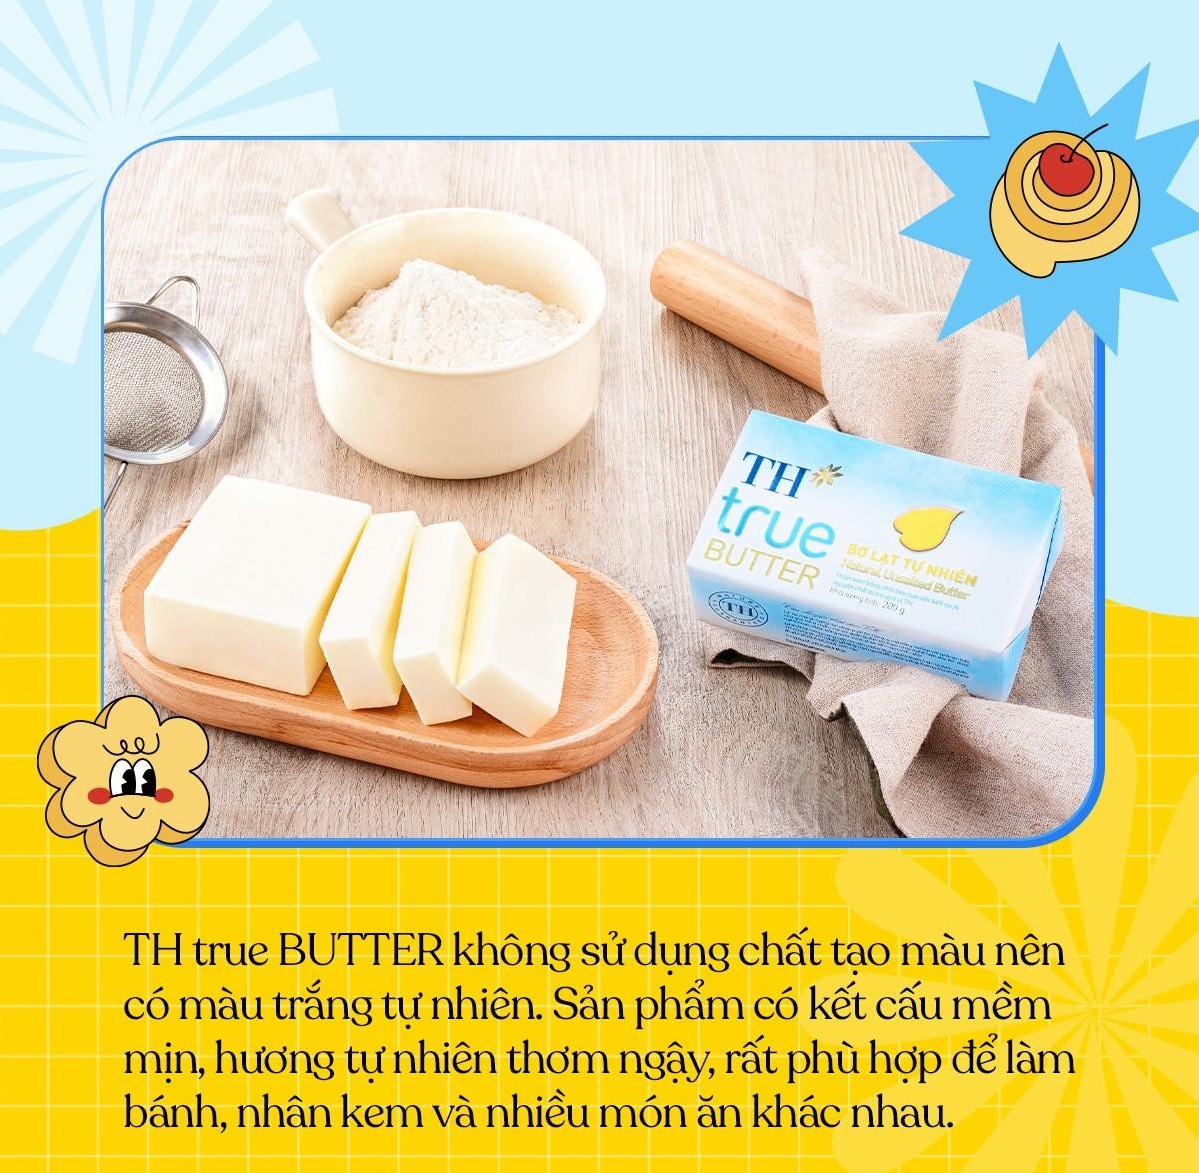 Bơ lạt tự nhiên TH True Butter bổ dưỡng cho món ngon mỗi ngày